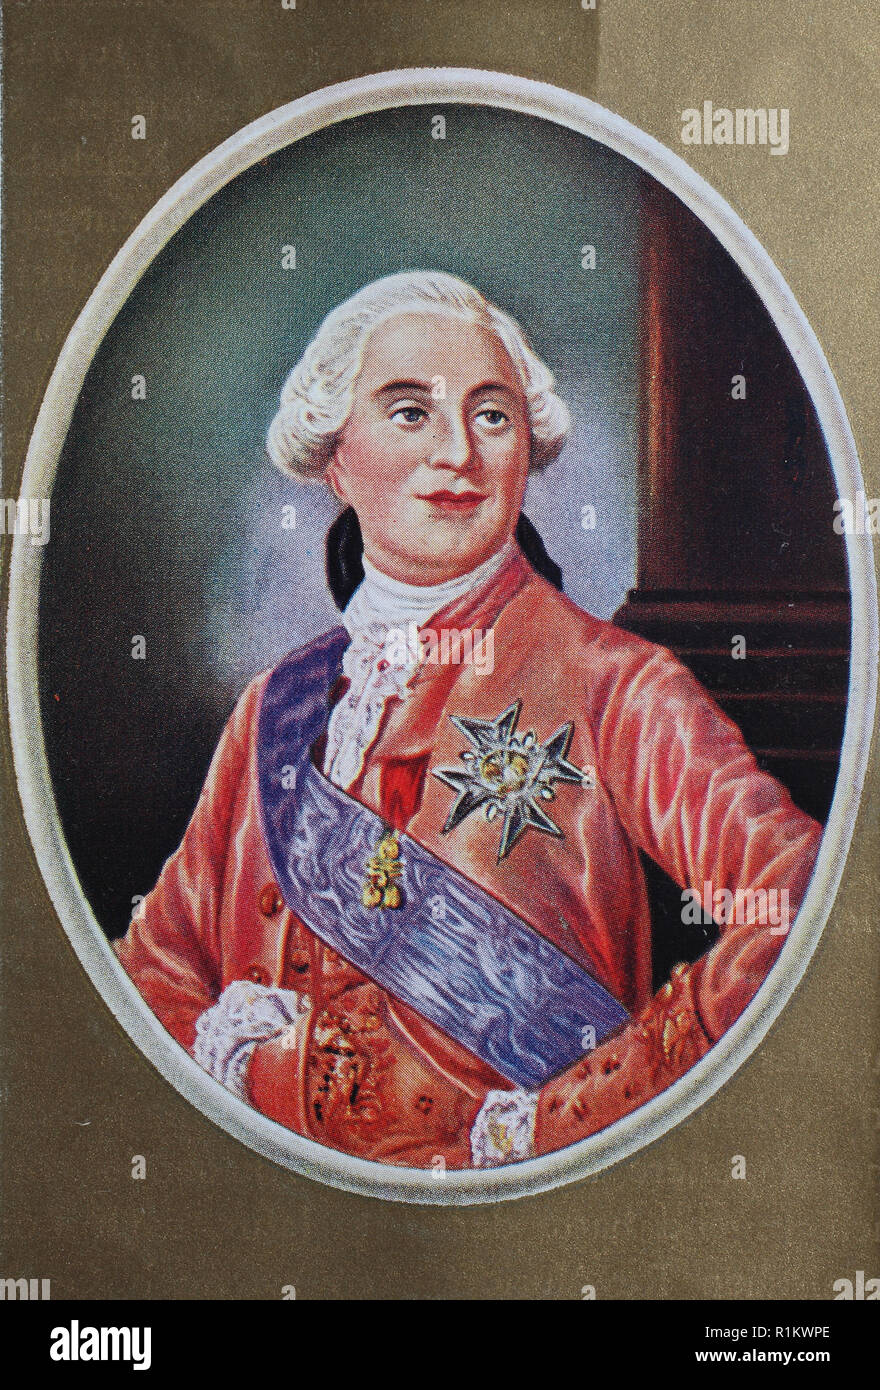 Digital verbesserte Reproduktion, Louis XVI, 1754-1793, geb. Louis-Auguste, war der letzte König von Frankreich vor dem Sturz der Monarchie in der Französischen Revolution Stockfoto